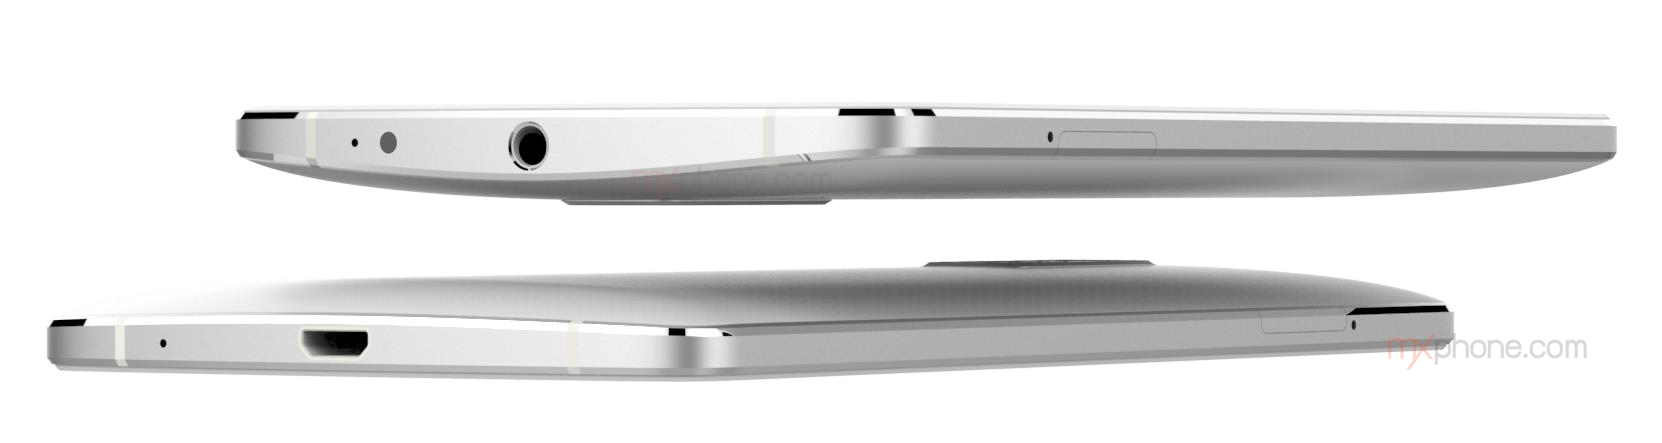 หลุดสเปค Lenovo Vibe X3 บน GFXBench คาดอาจจะได้เห็นตัวจริงในงาน IFA 2015